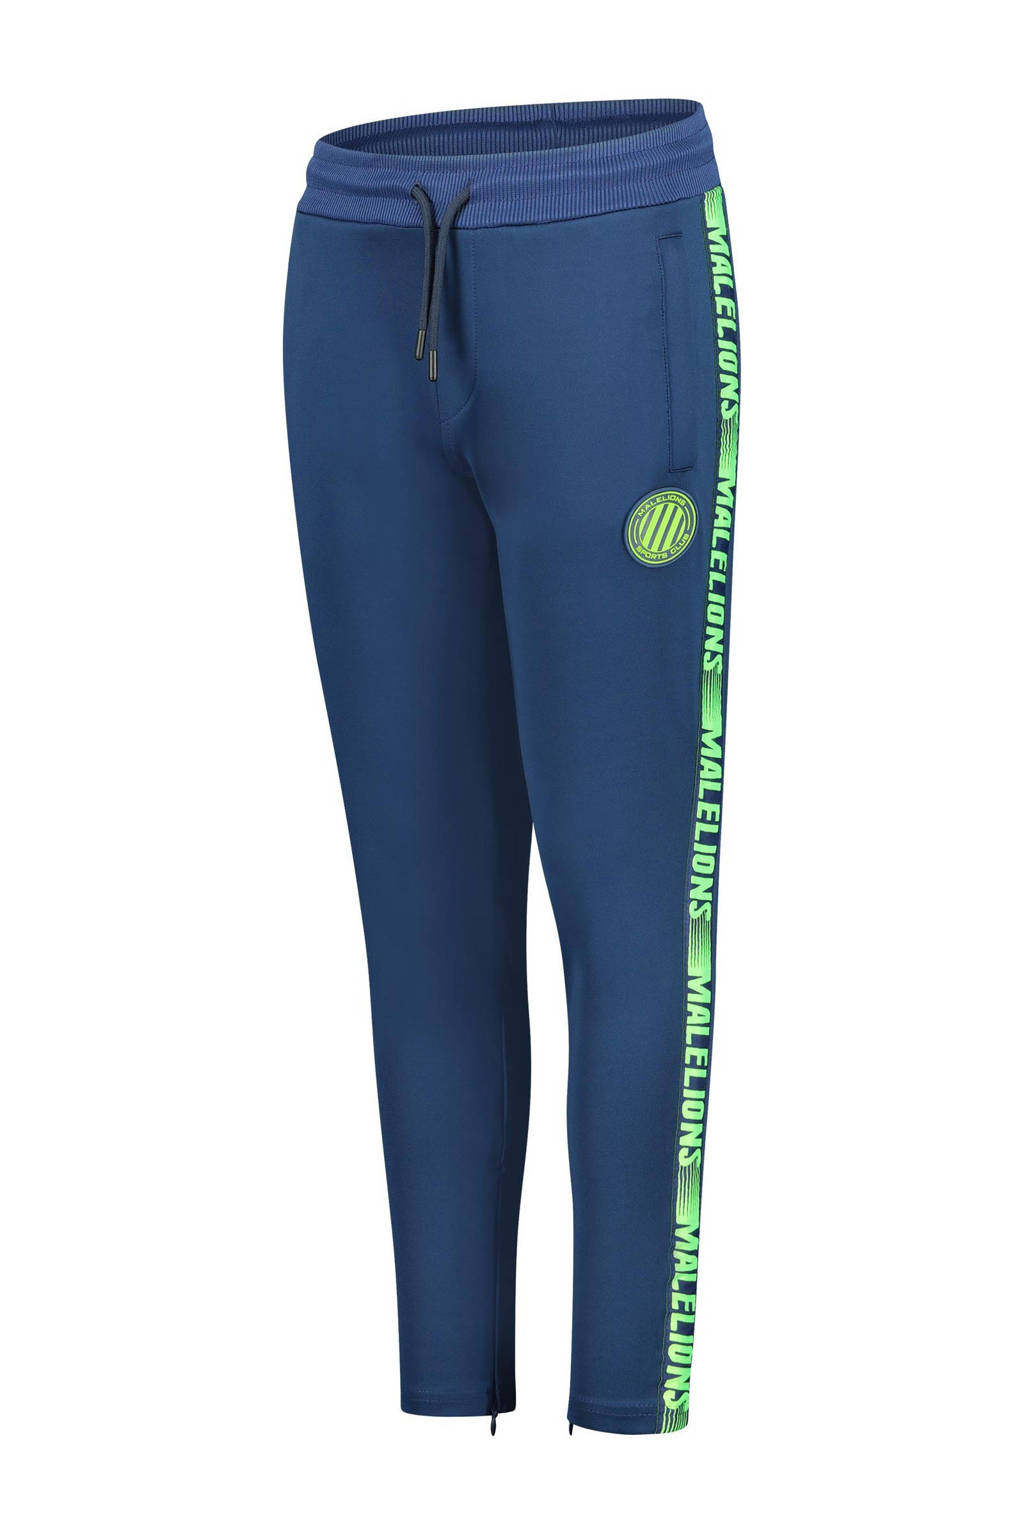 Malelions skinny joggingbroek met zijstreep donkerblauw/groen